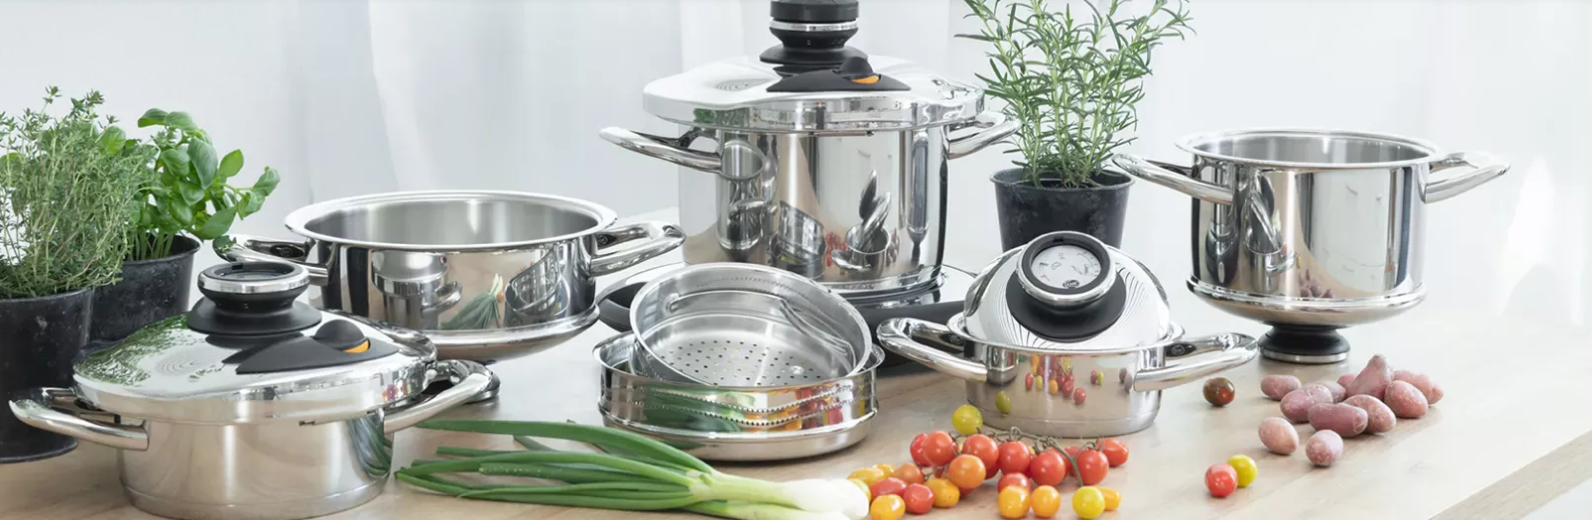 AMC lanza su nuevo sistema de cocina inteligente M30smart